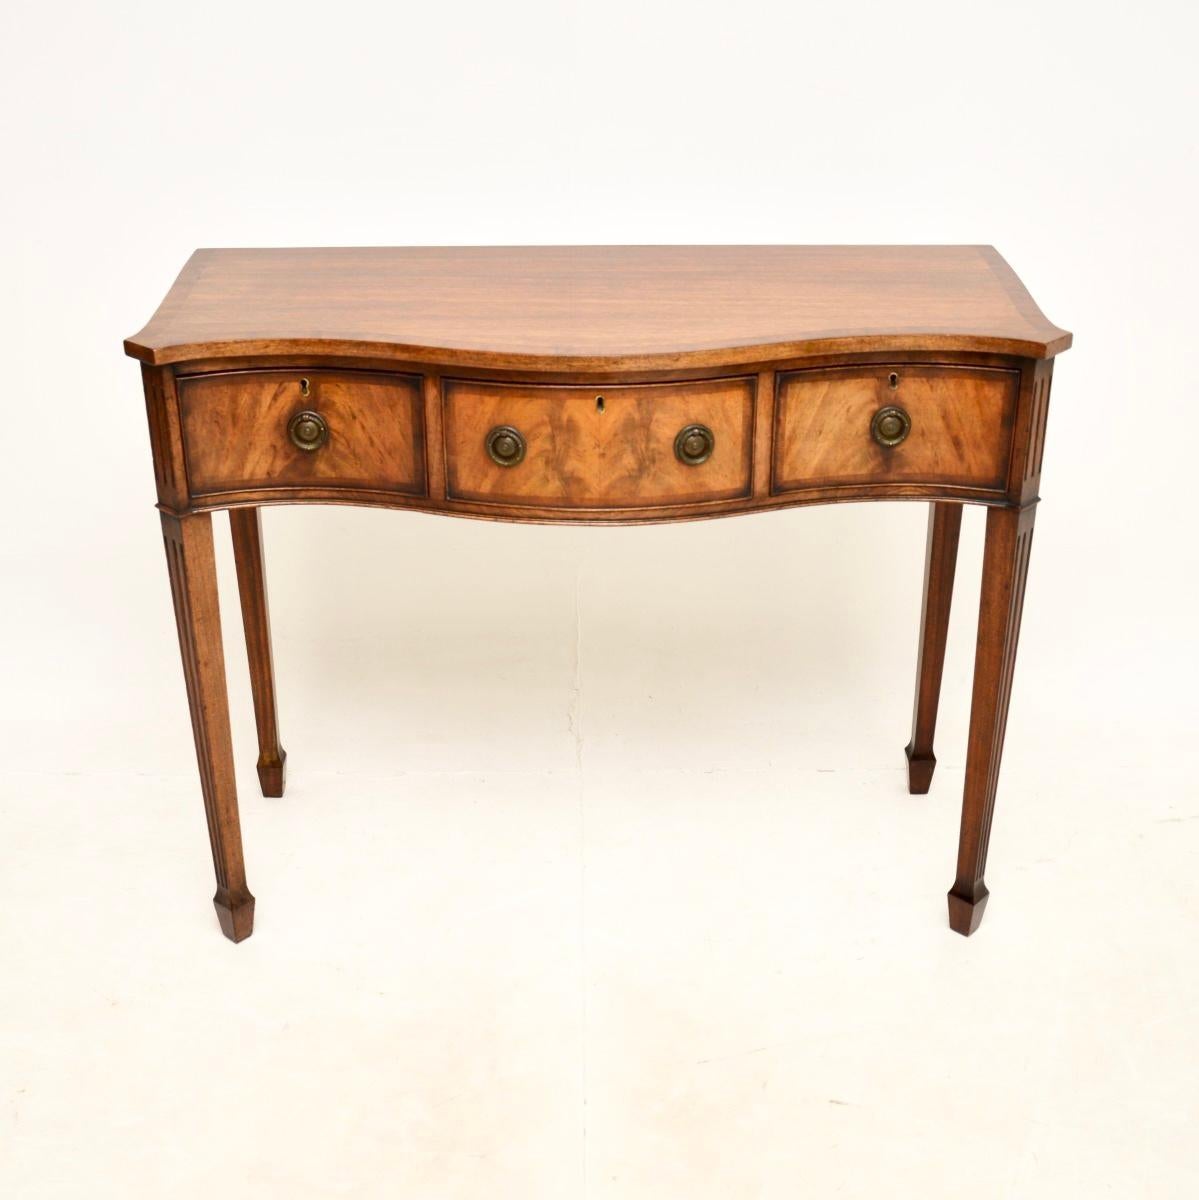 Une belle table d'appoint ancienne de style édouardien, fabriquée en Angleterre et datant de la période 1900-1910.

Il est d'une superbe qualité et d'une grande taille, avec de jolies caractéristiques de conception. Il présente une façade en forme